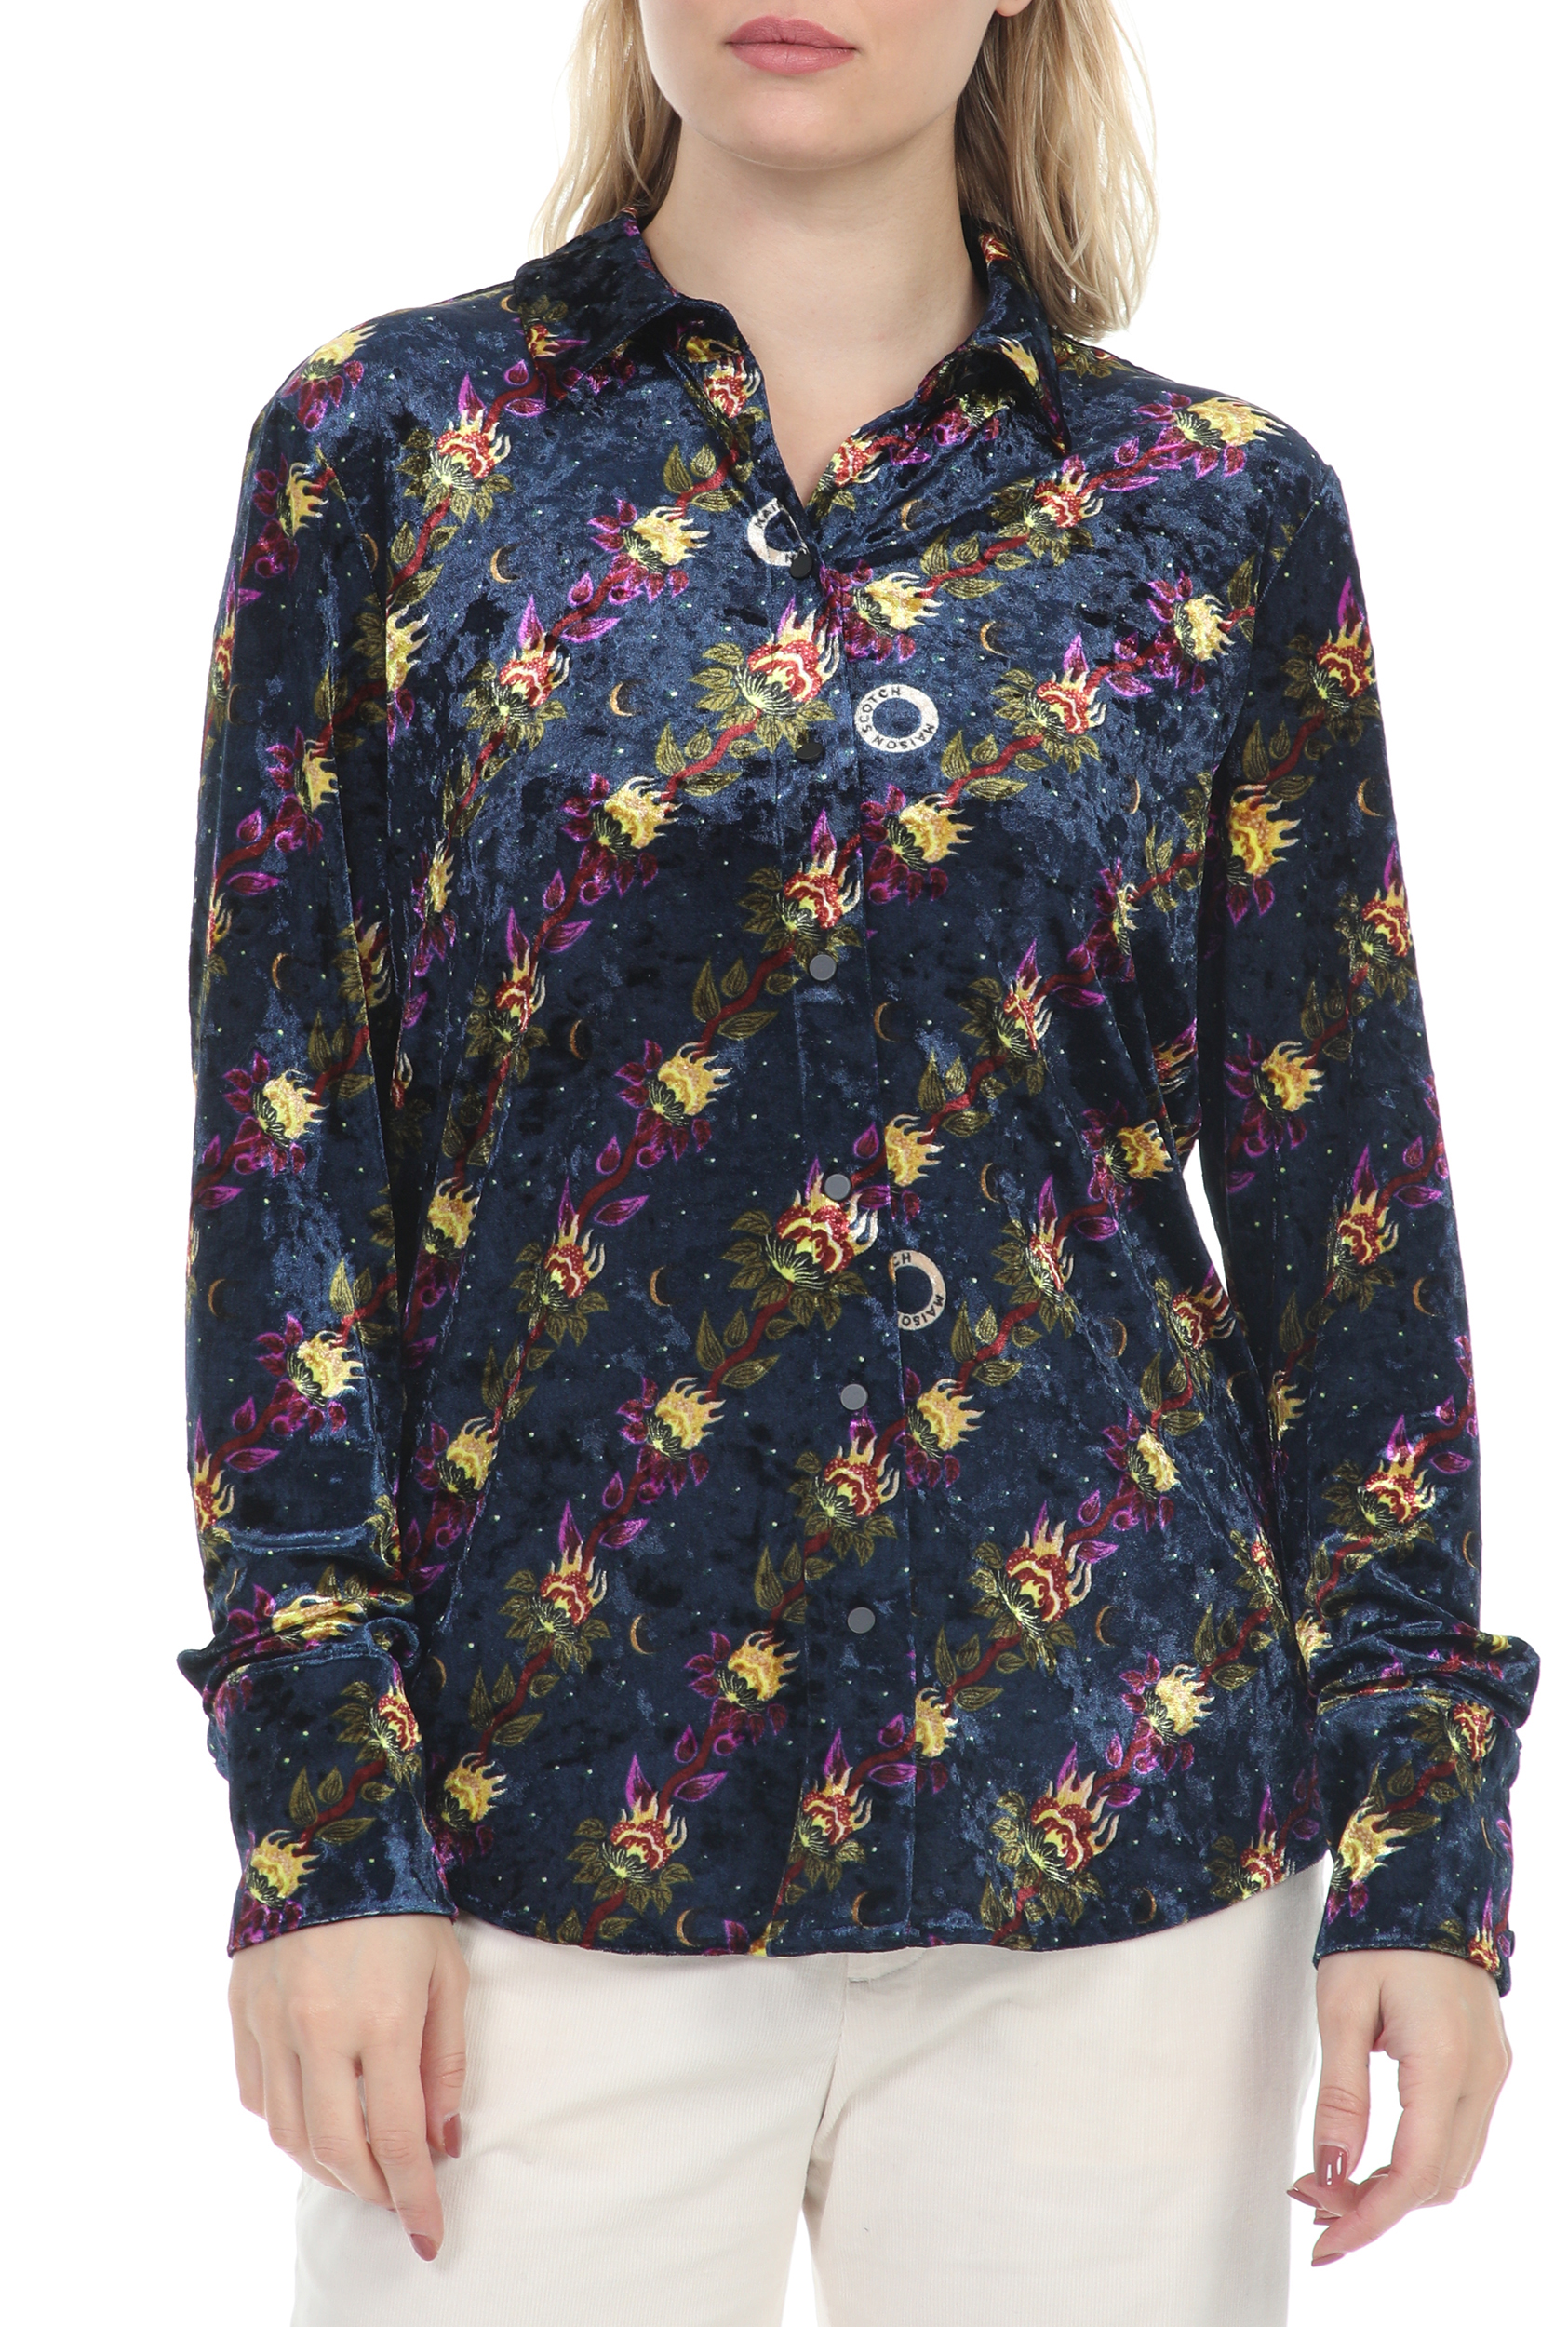 Γυναικεία/Ρούχα/Πουκάμισα/Μακρυμάνικα SCOTCH & SODA - Γυναικείο πουκάμισο SCOTCH & SODA μπλε floral